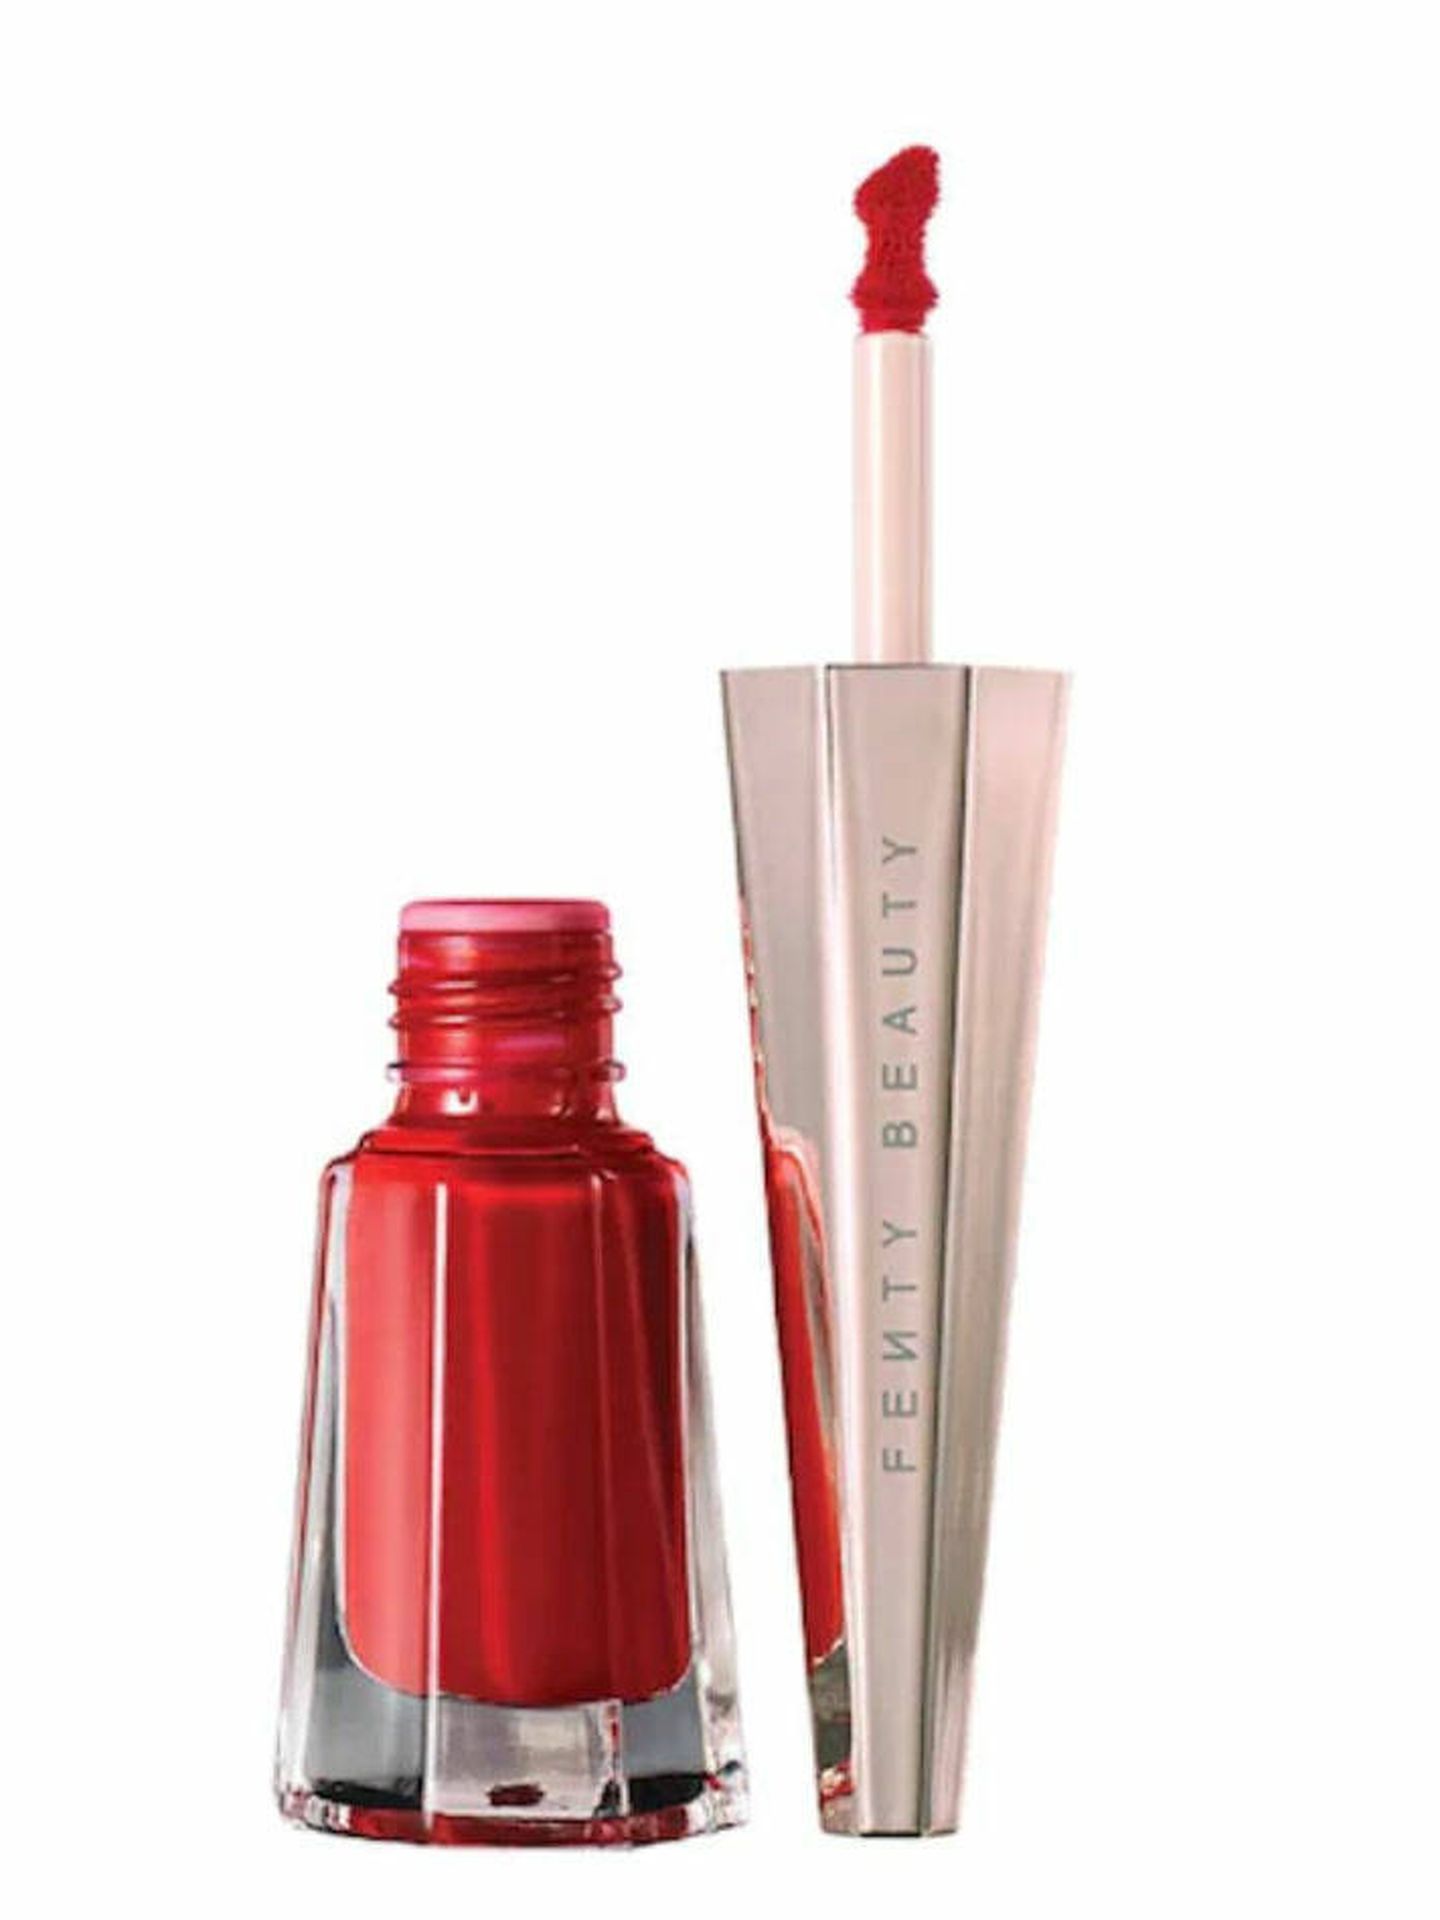 Los 10 pintalabios rojos más vendidos de Sephora